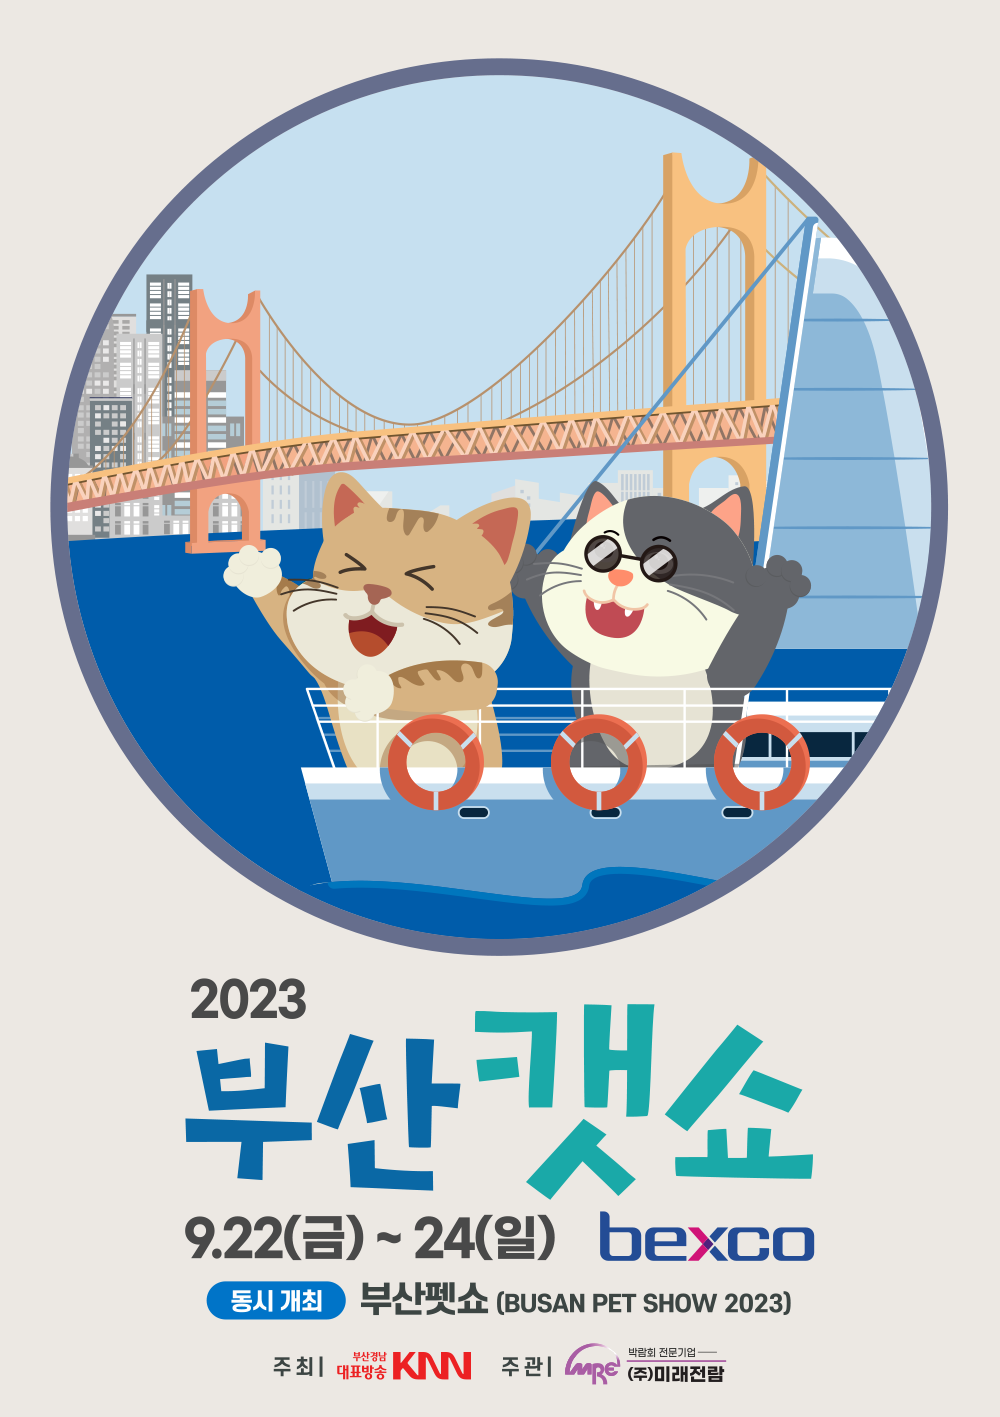 2023 부산캣쇼 9월 22일 금요일~24일 일요일 bexco 동시개최 부산펫쇼(BUSAN PET SHOW 2023) 주최| 부산경남대표방송KNN 주관|박람회 전문기업 (주)미래전람